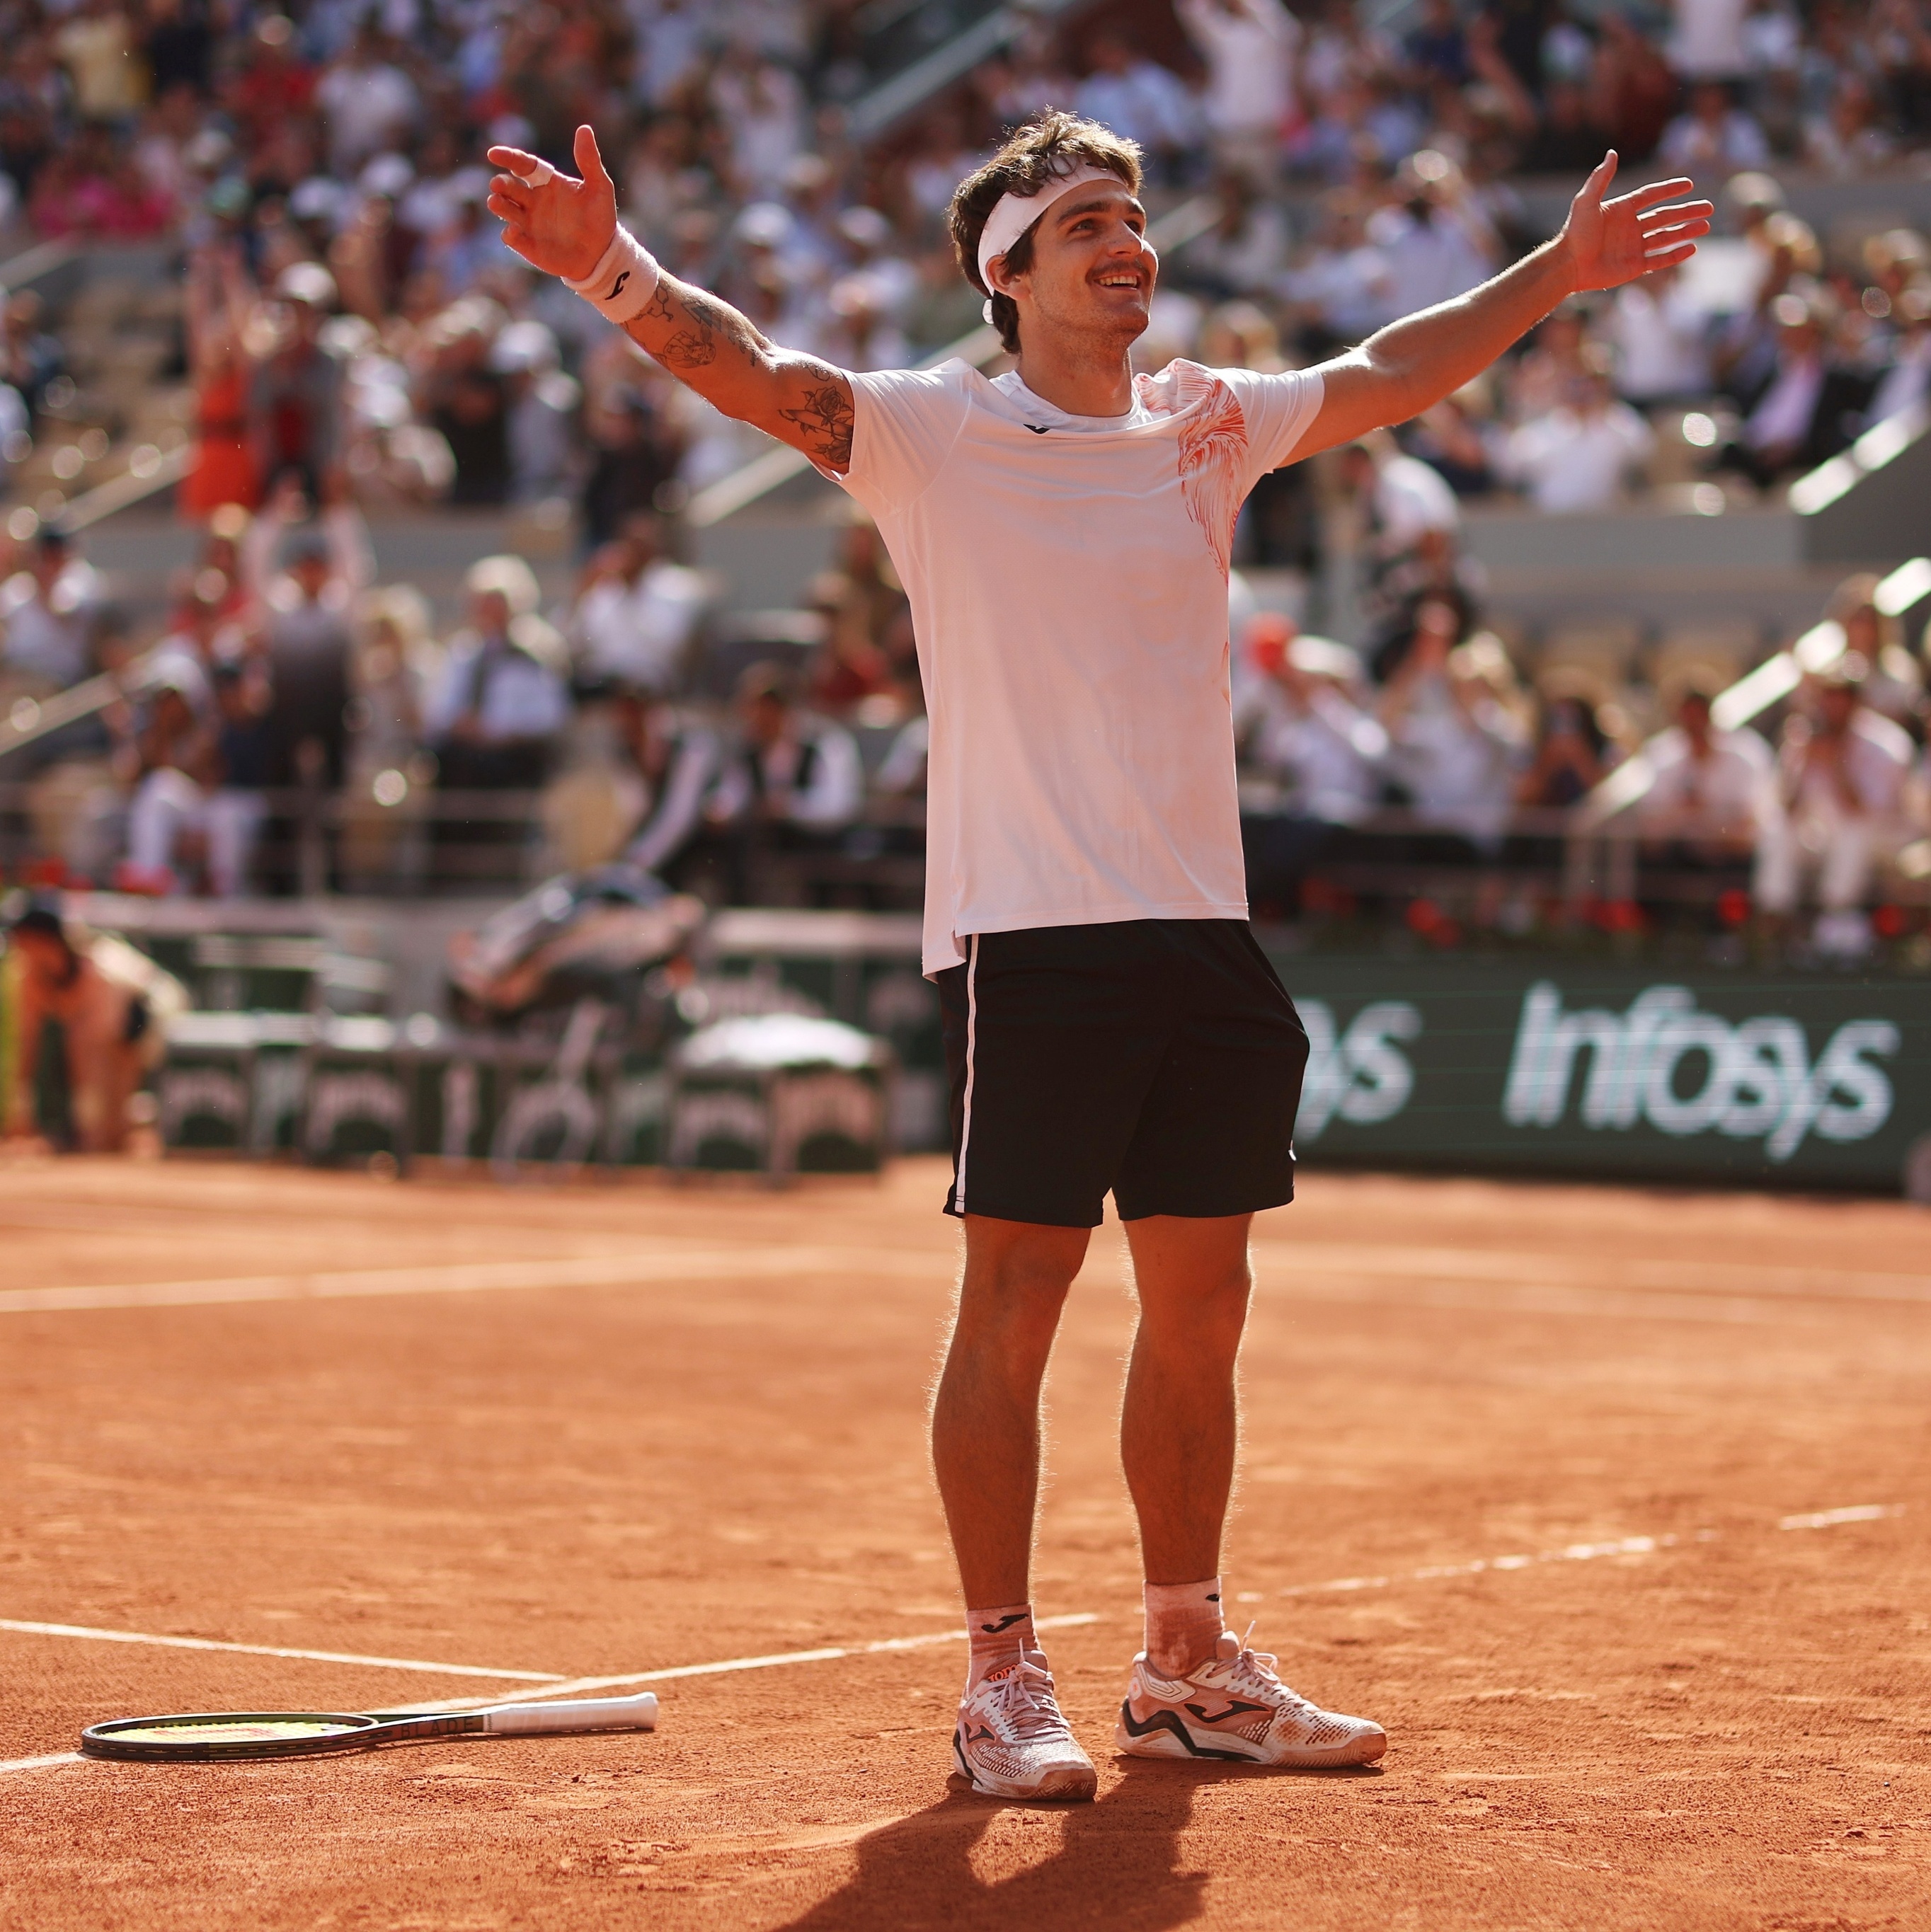 Tennis Clash: jogo de tênis mobile de Rolan Garros - Blog Esporte